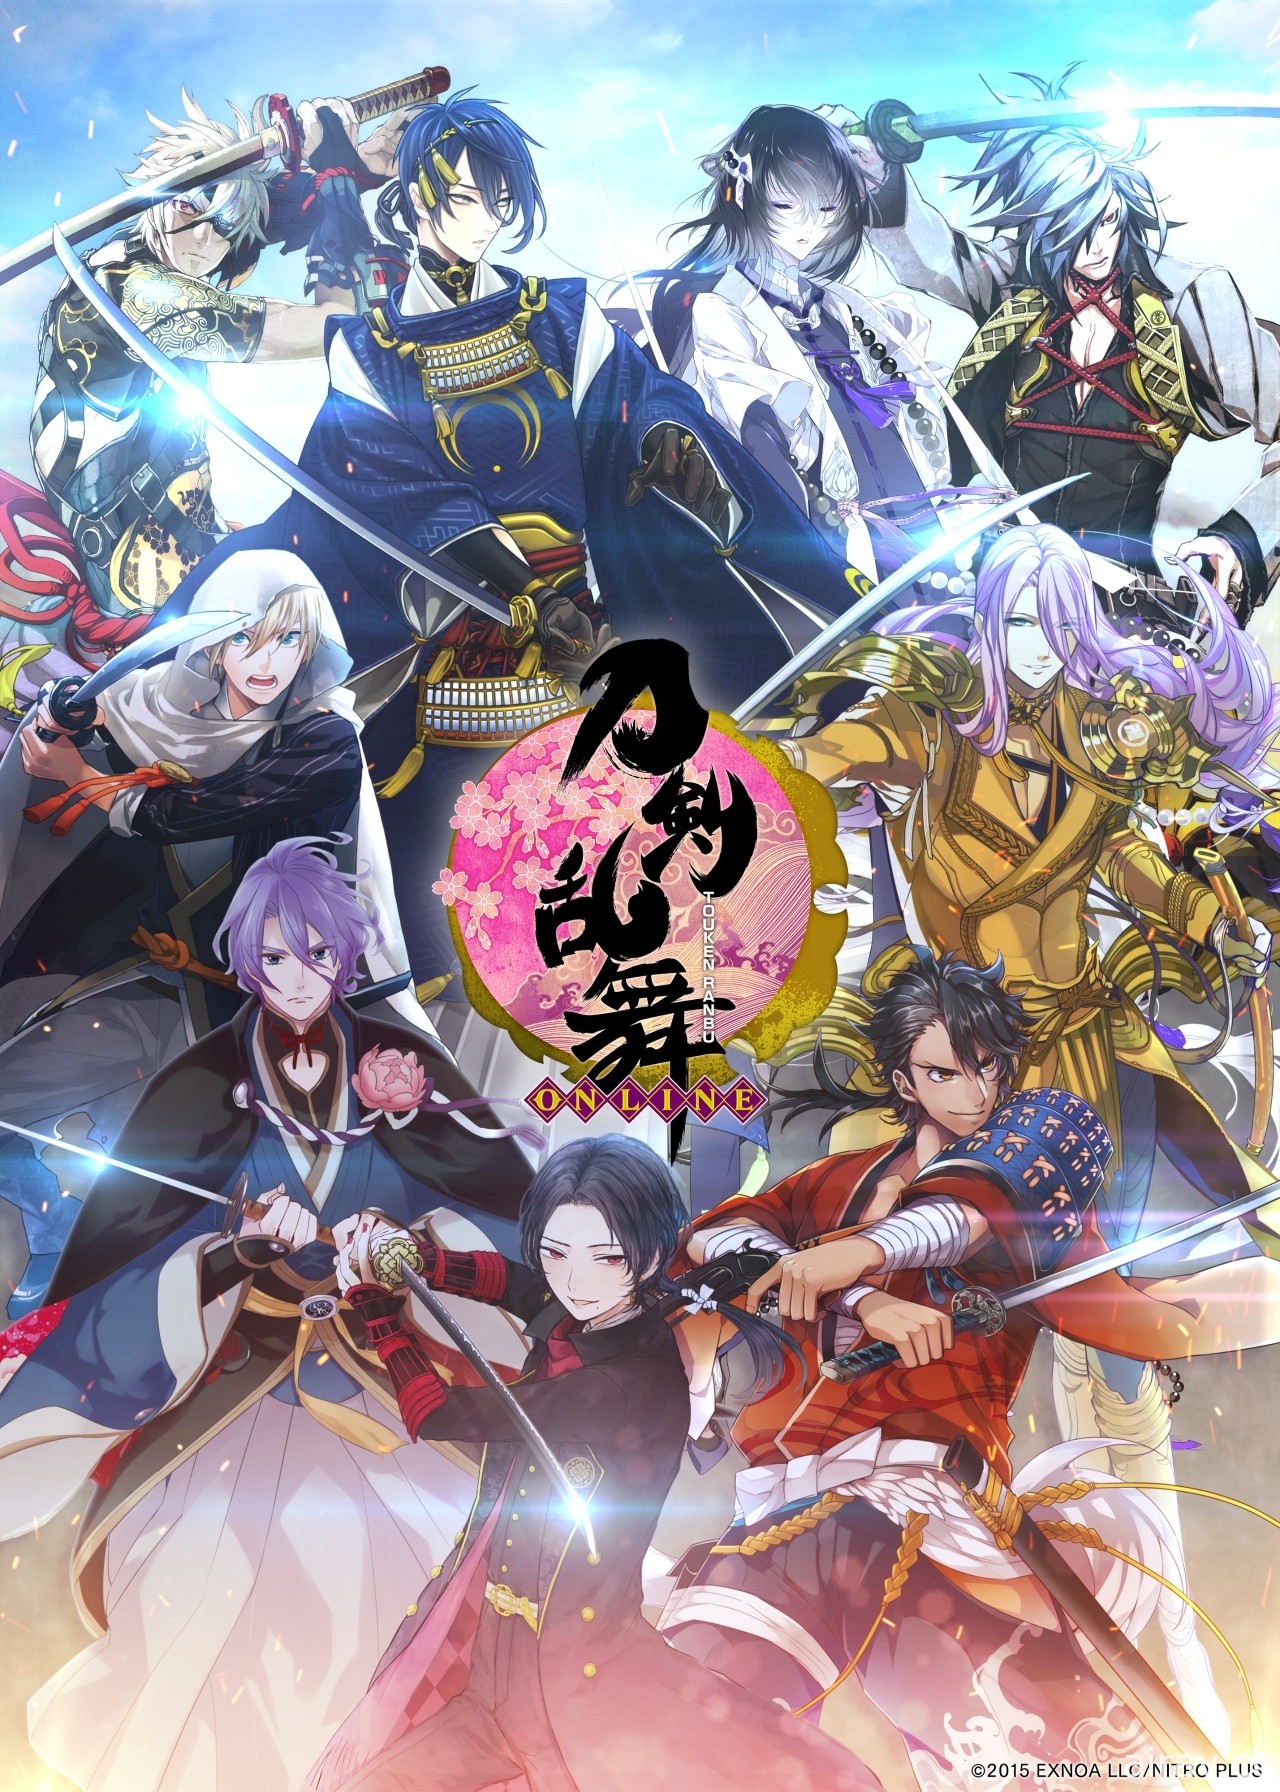 《刀剑乱舞 -ONLINE-》繁体中文版将在台推出 与刀剑男士一起为守护历史而战